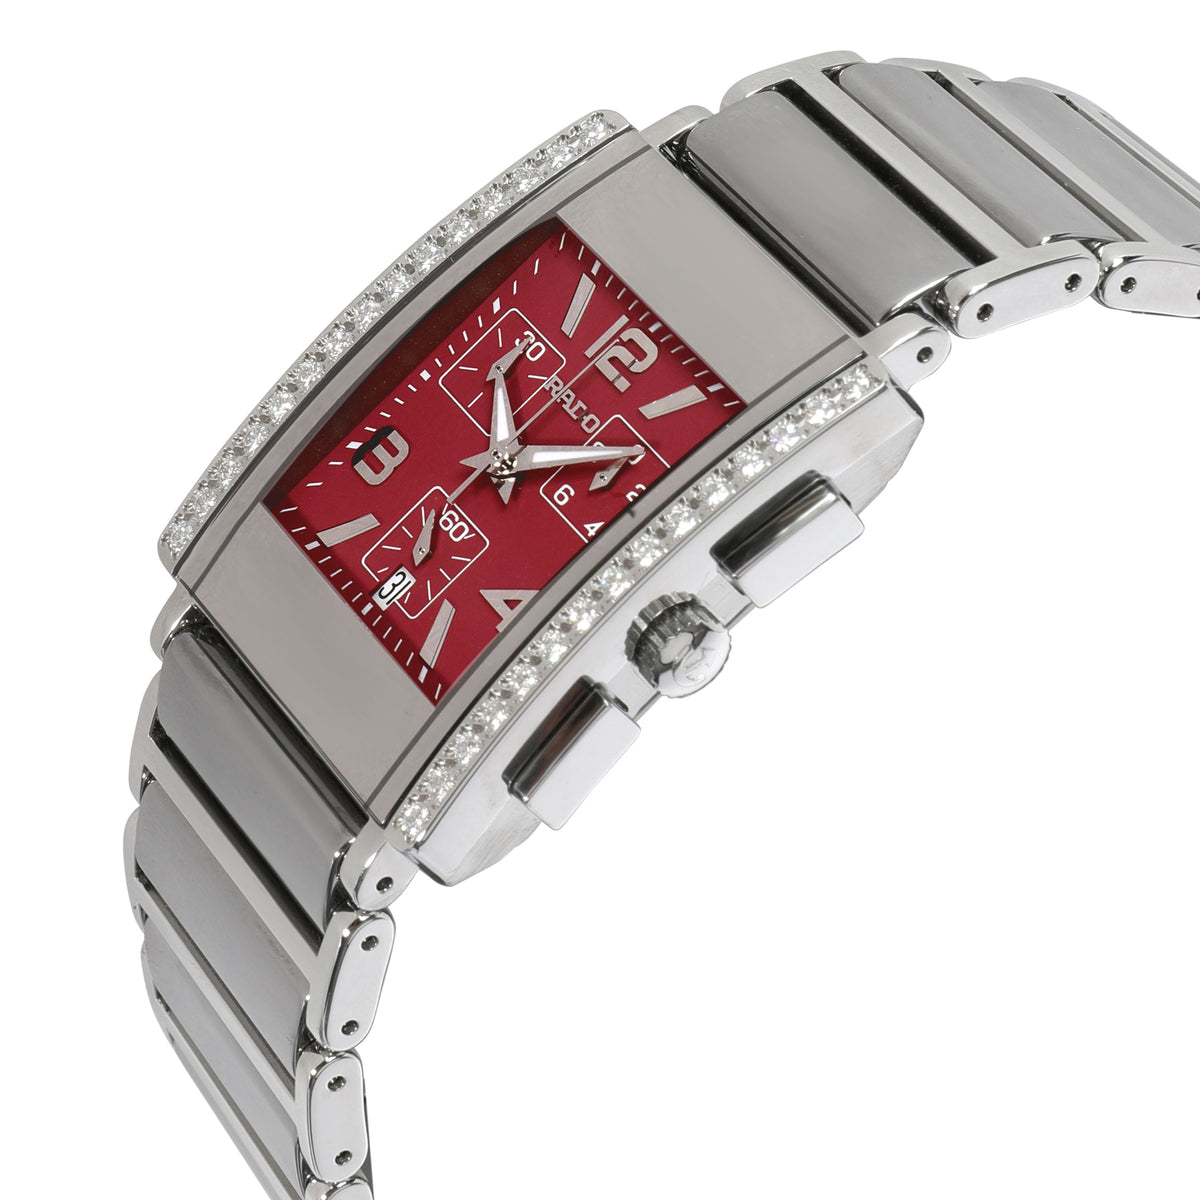 Rado Diastar 538.0670.3 Unisex Watch in  Stainless Steel & Ceramic